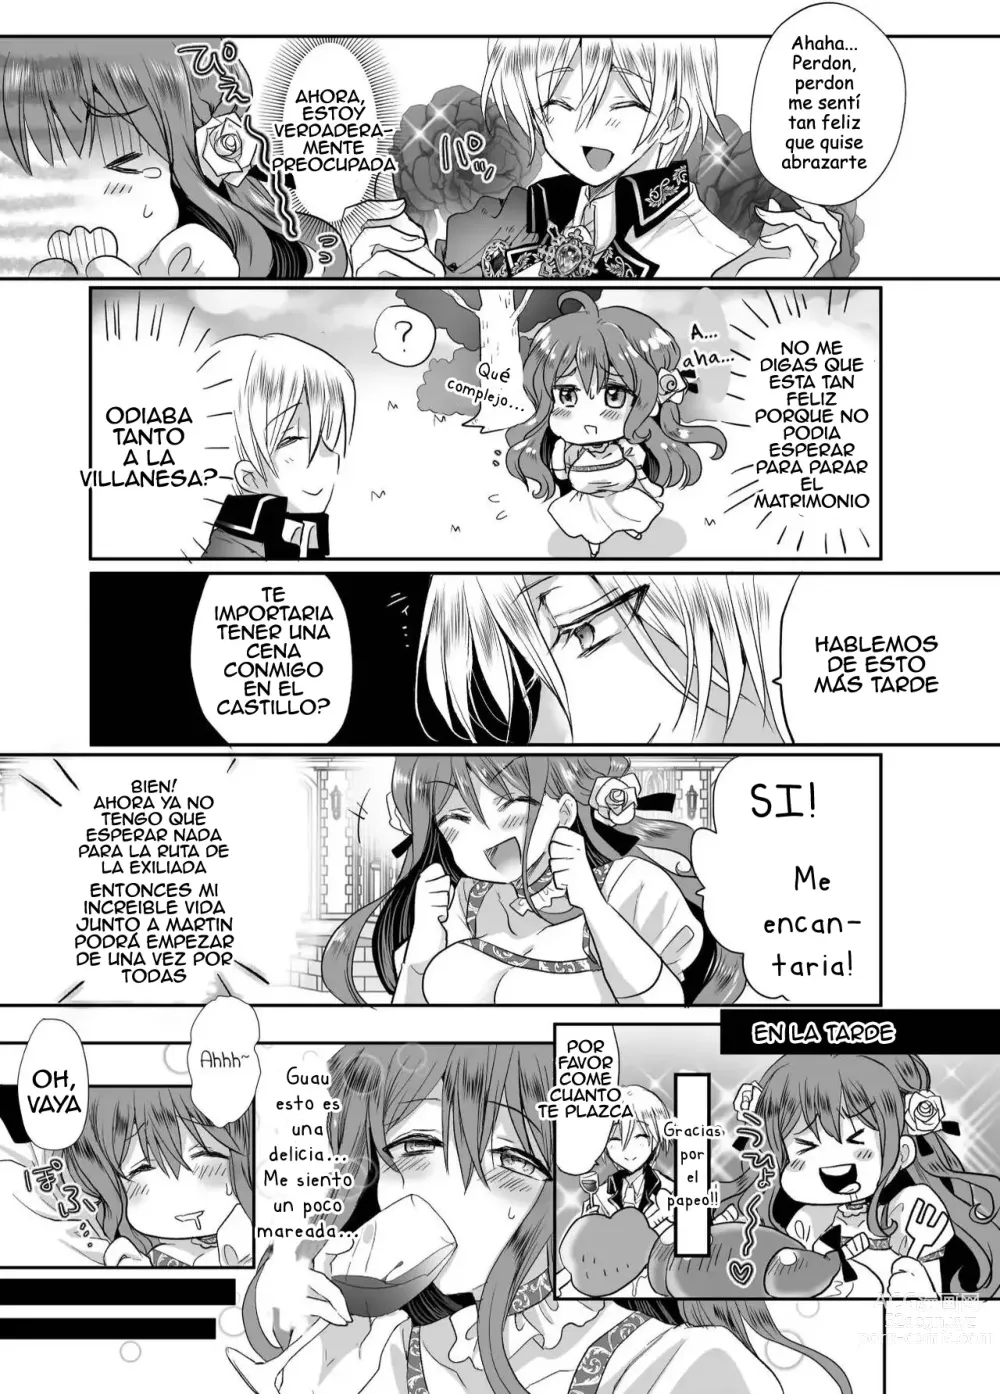 Page 24 of doujinshi Colegiala fangirl de NPCs reencarna como la hija de la villana ~La Tragedia~ Parte 1